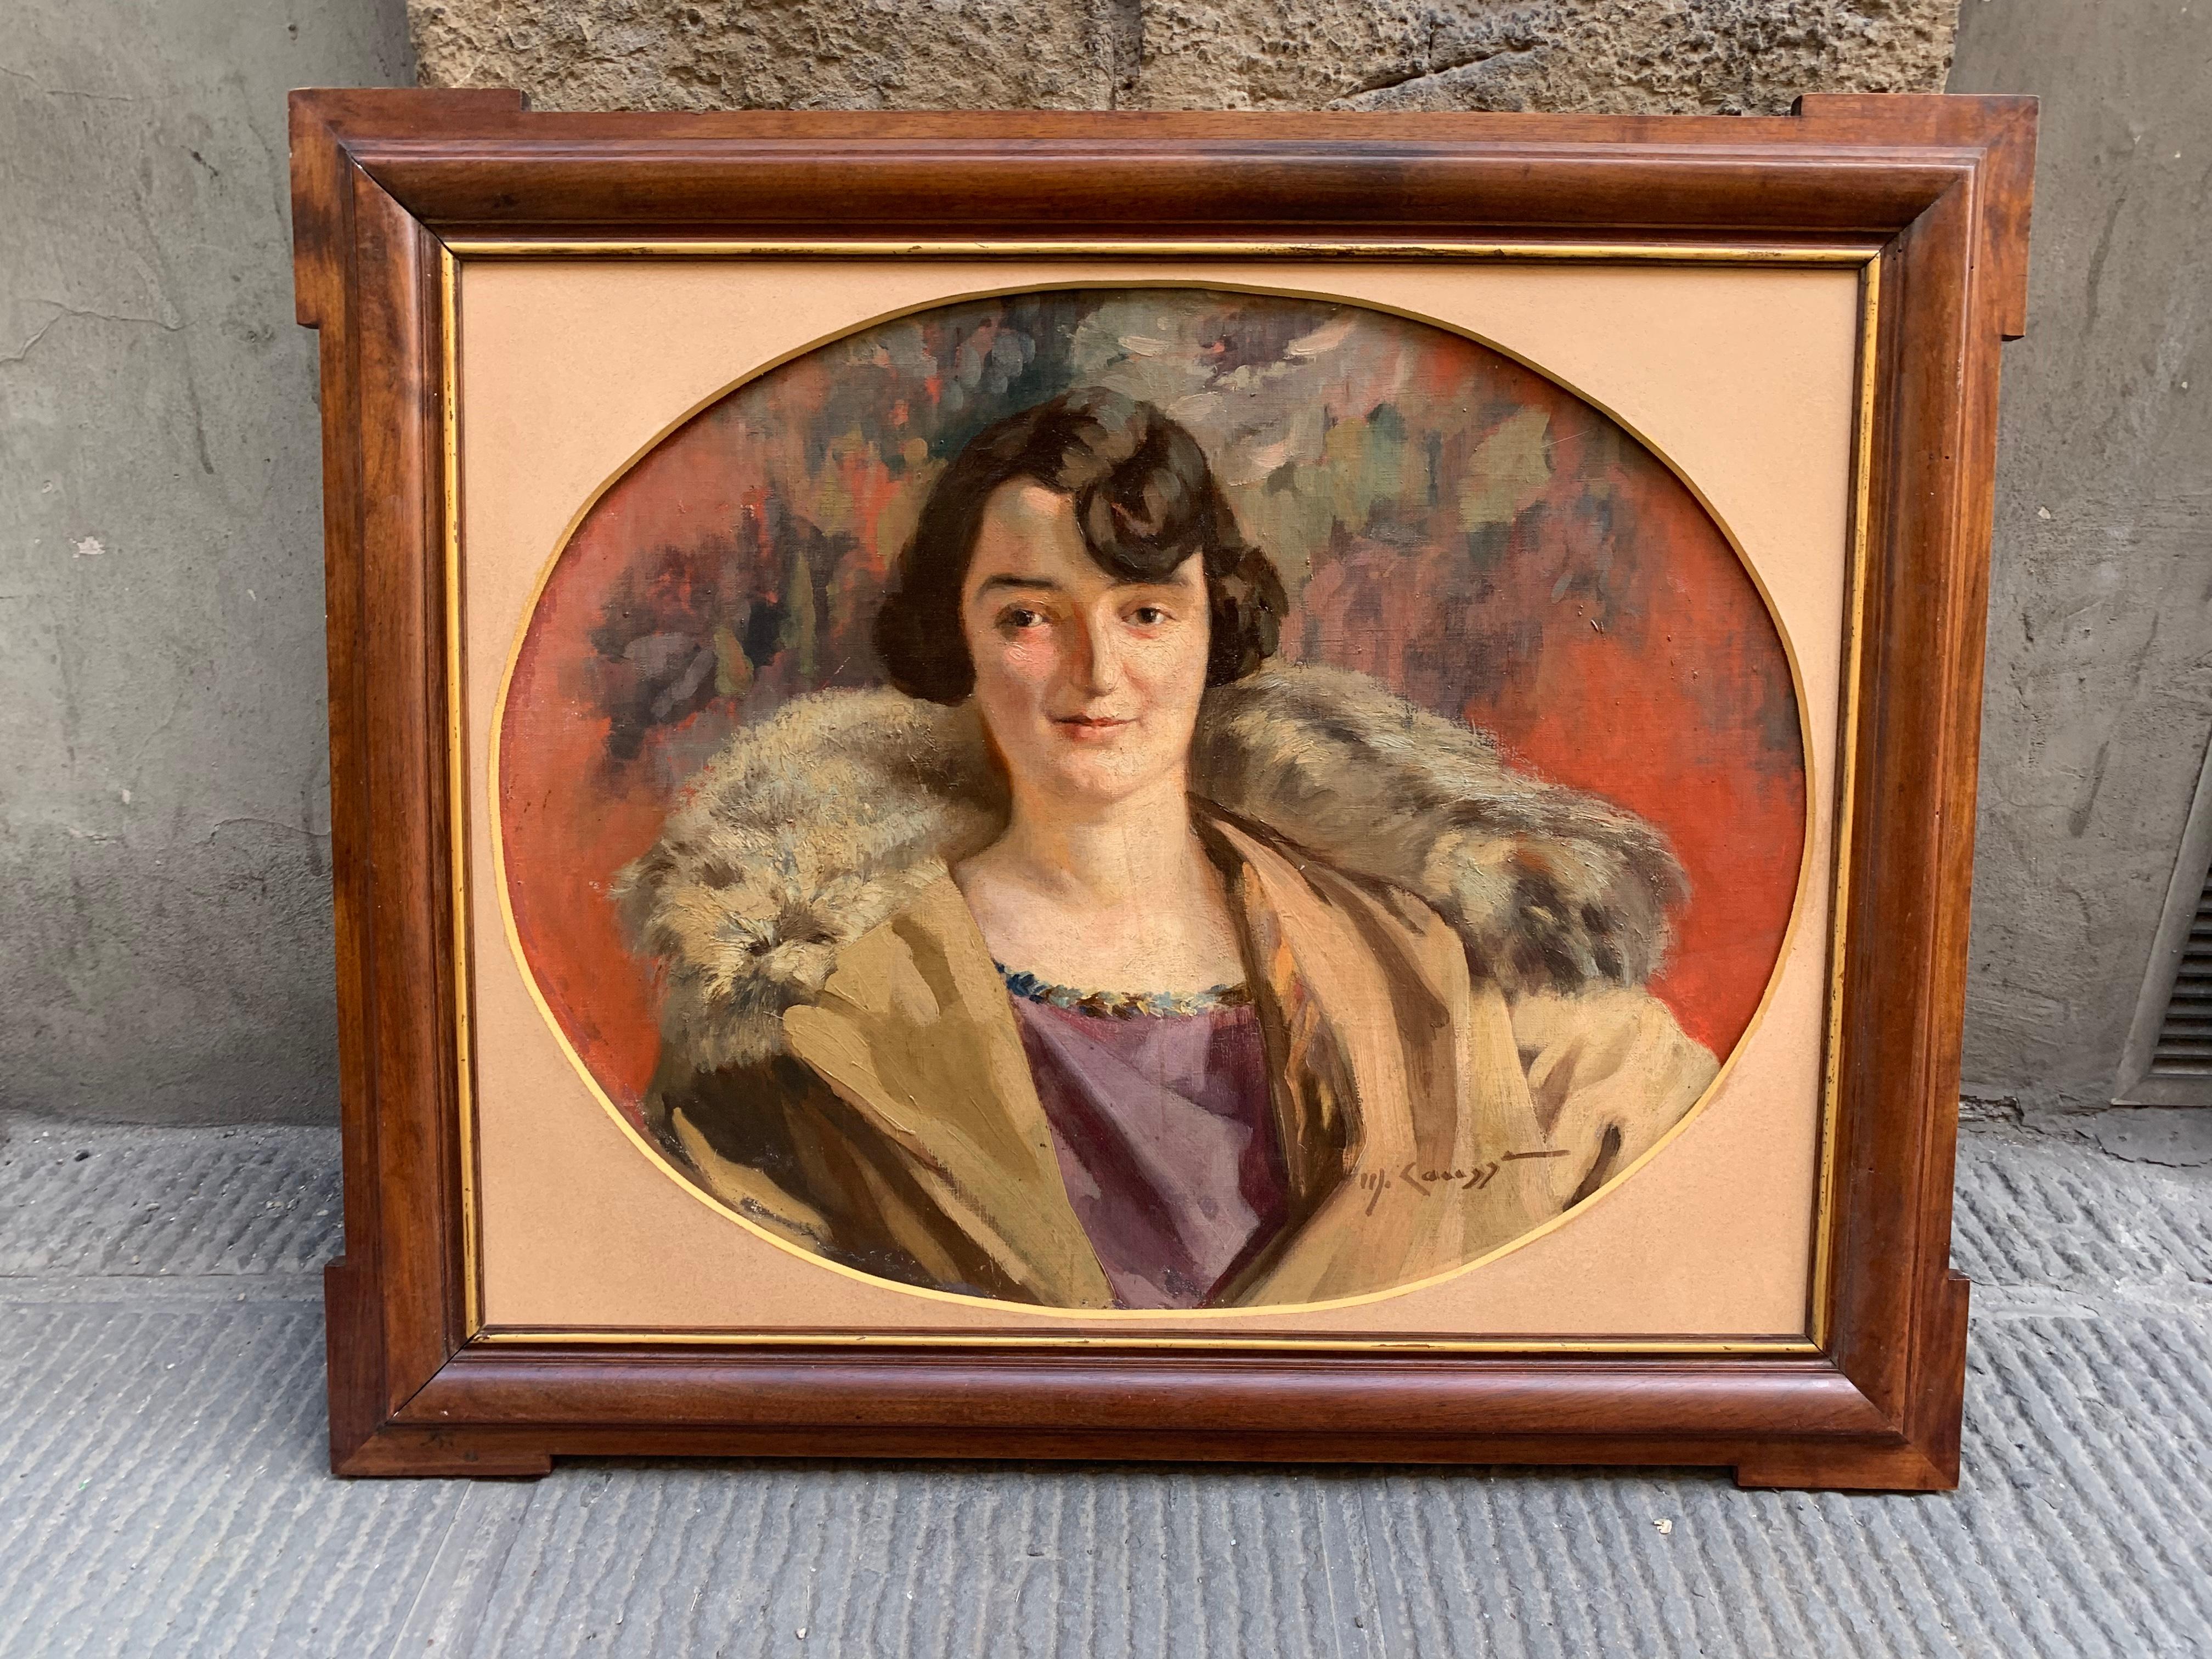 Art Deco, um 1920. Porträt einer Dame mit Bobschnitt, lila Kleid und Pelzkragen – Painting von Unknown